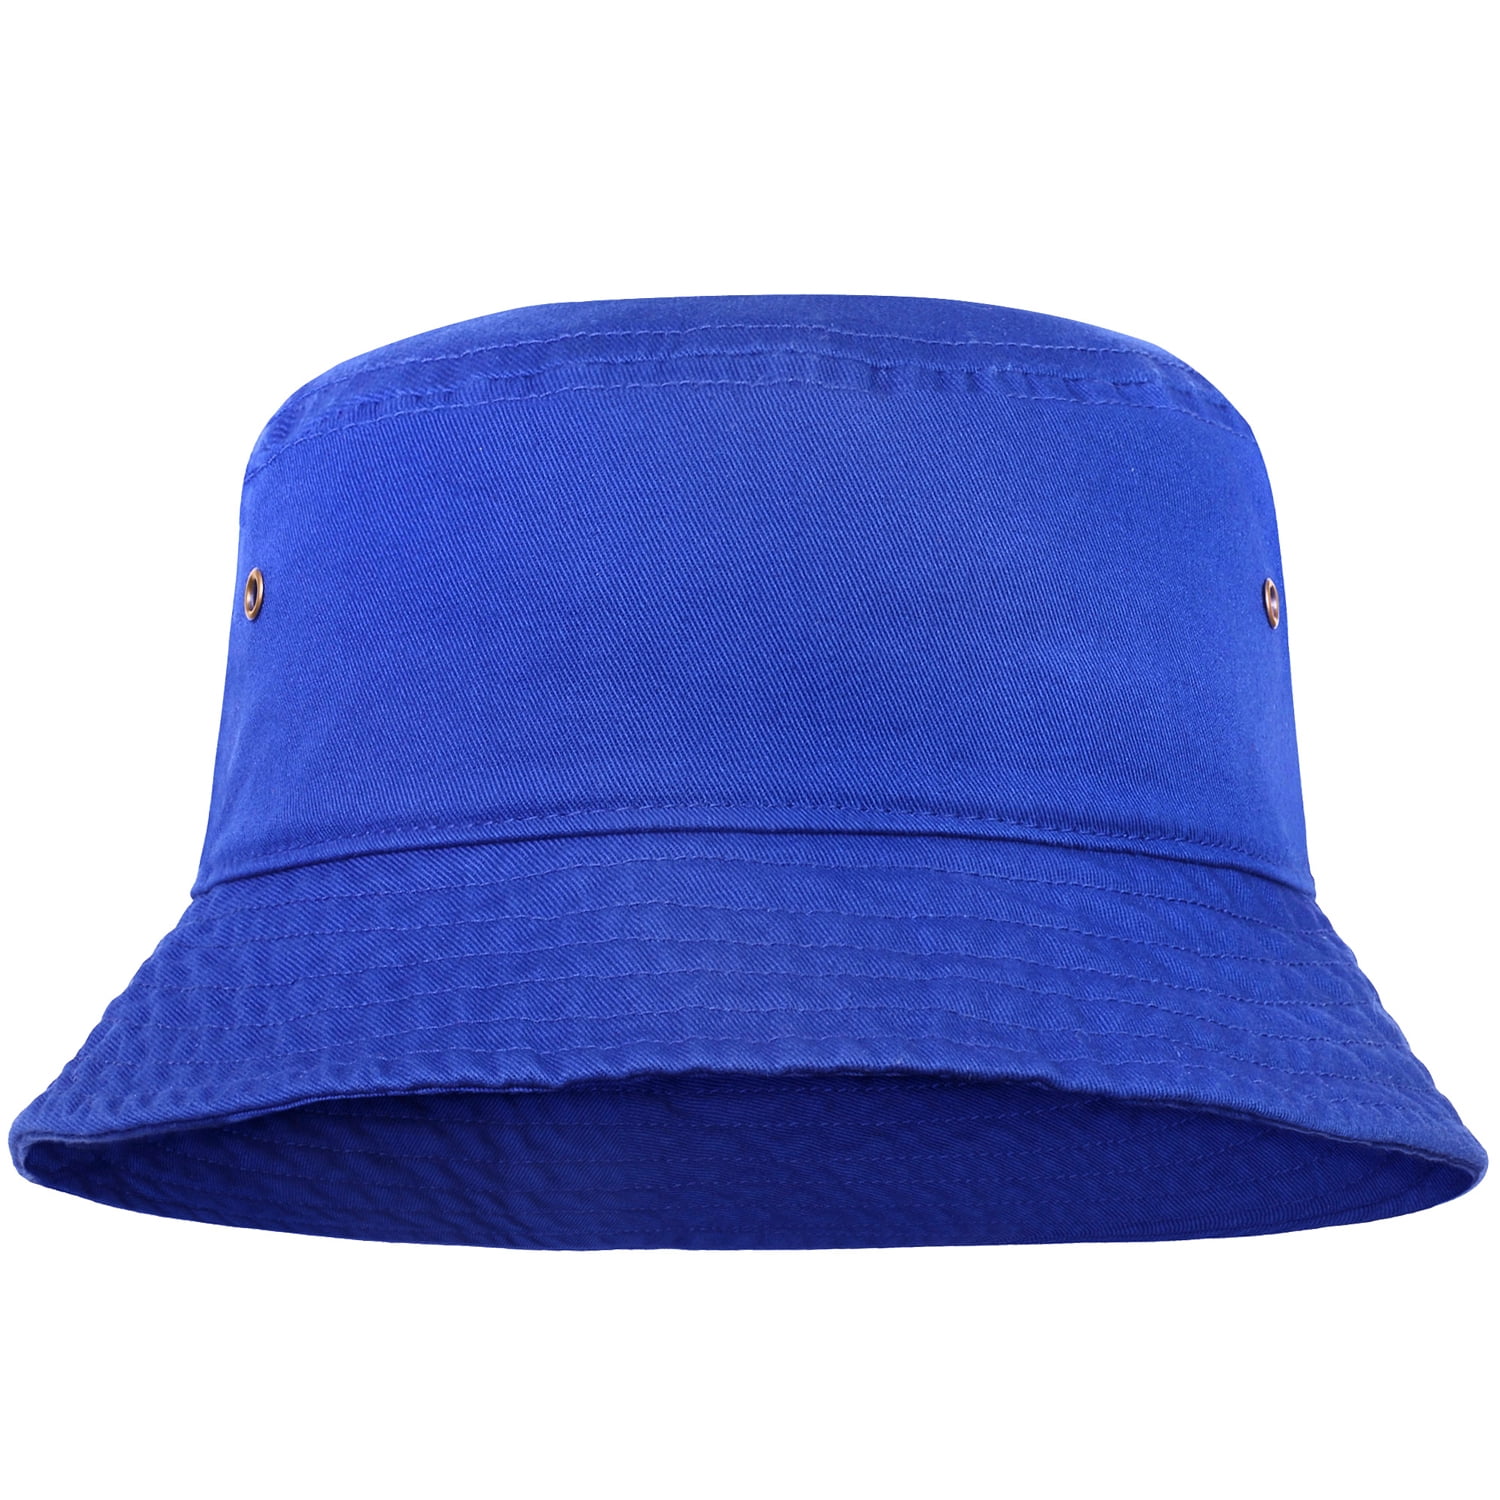  Unisex Bucket Hat For Women Men, Packable Cotton Sun Hat  Plain Colors 4 Pack